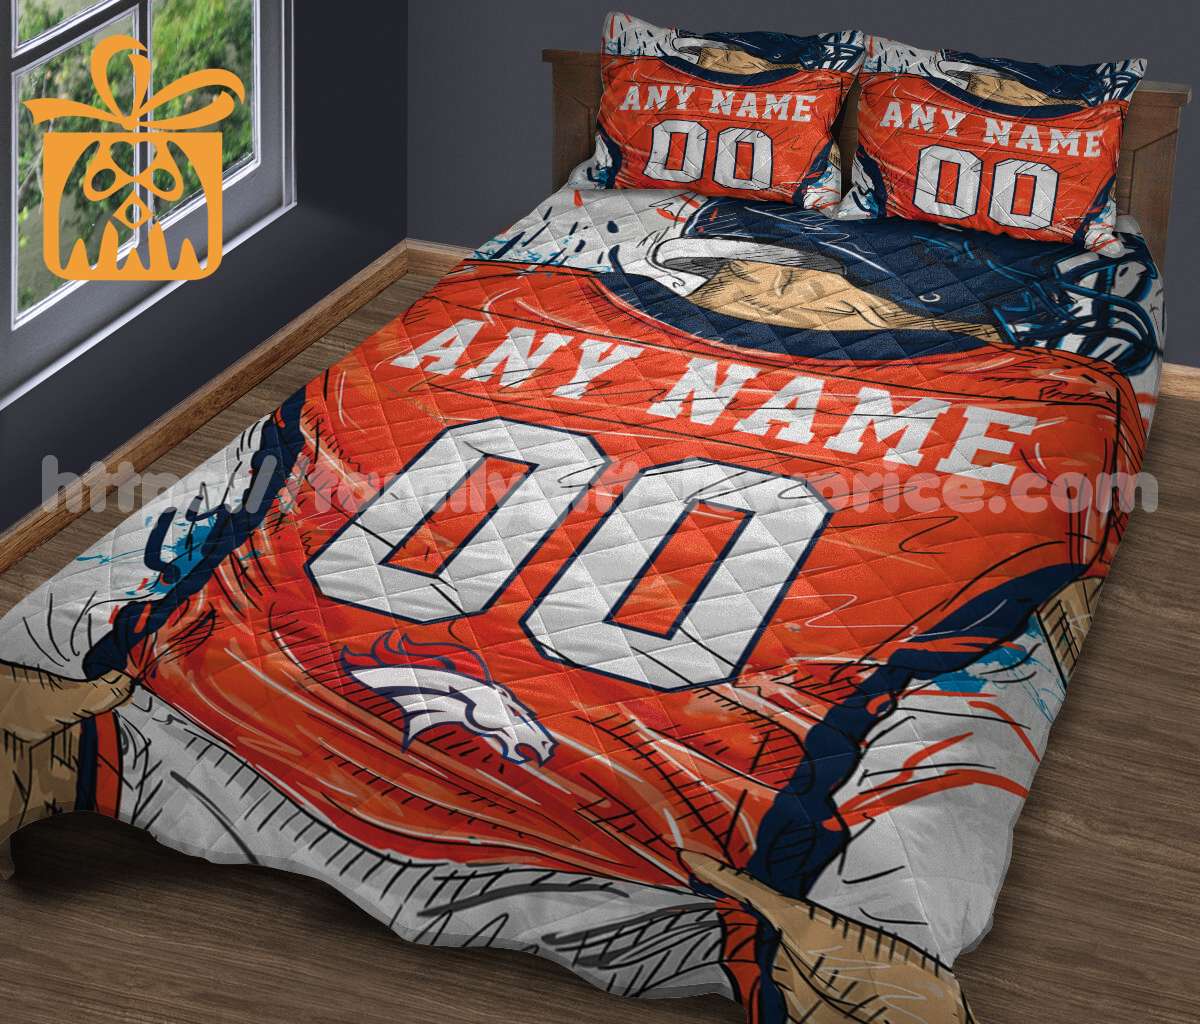 Denver Broncos Jerseys Quilt Bedding Sets, Denver Broncos Gifts, Personalized NFL Jerseys with Your Name & Number